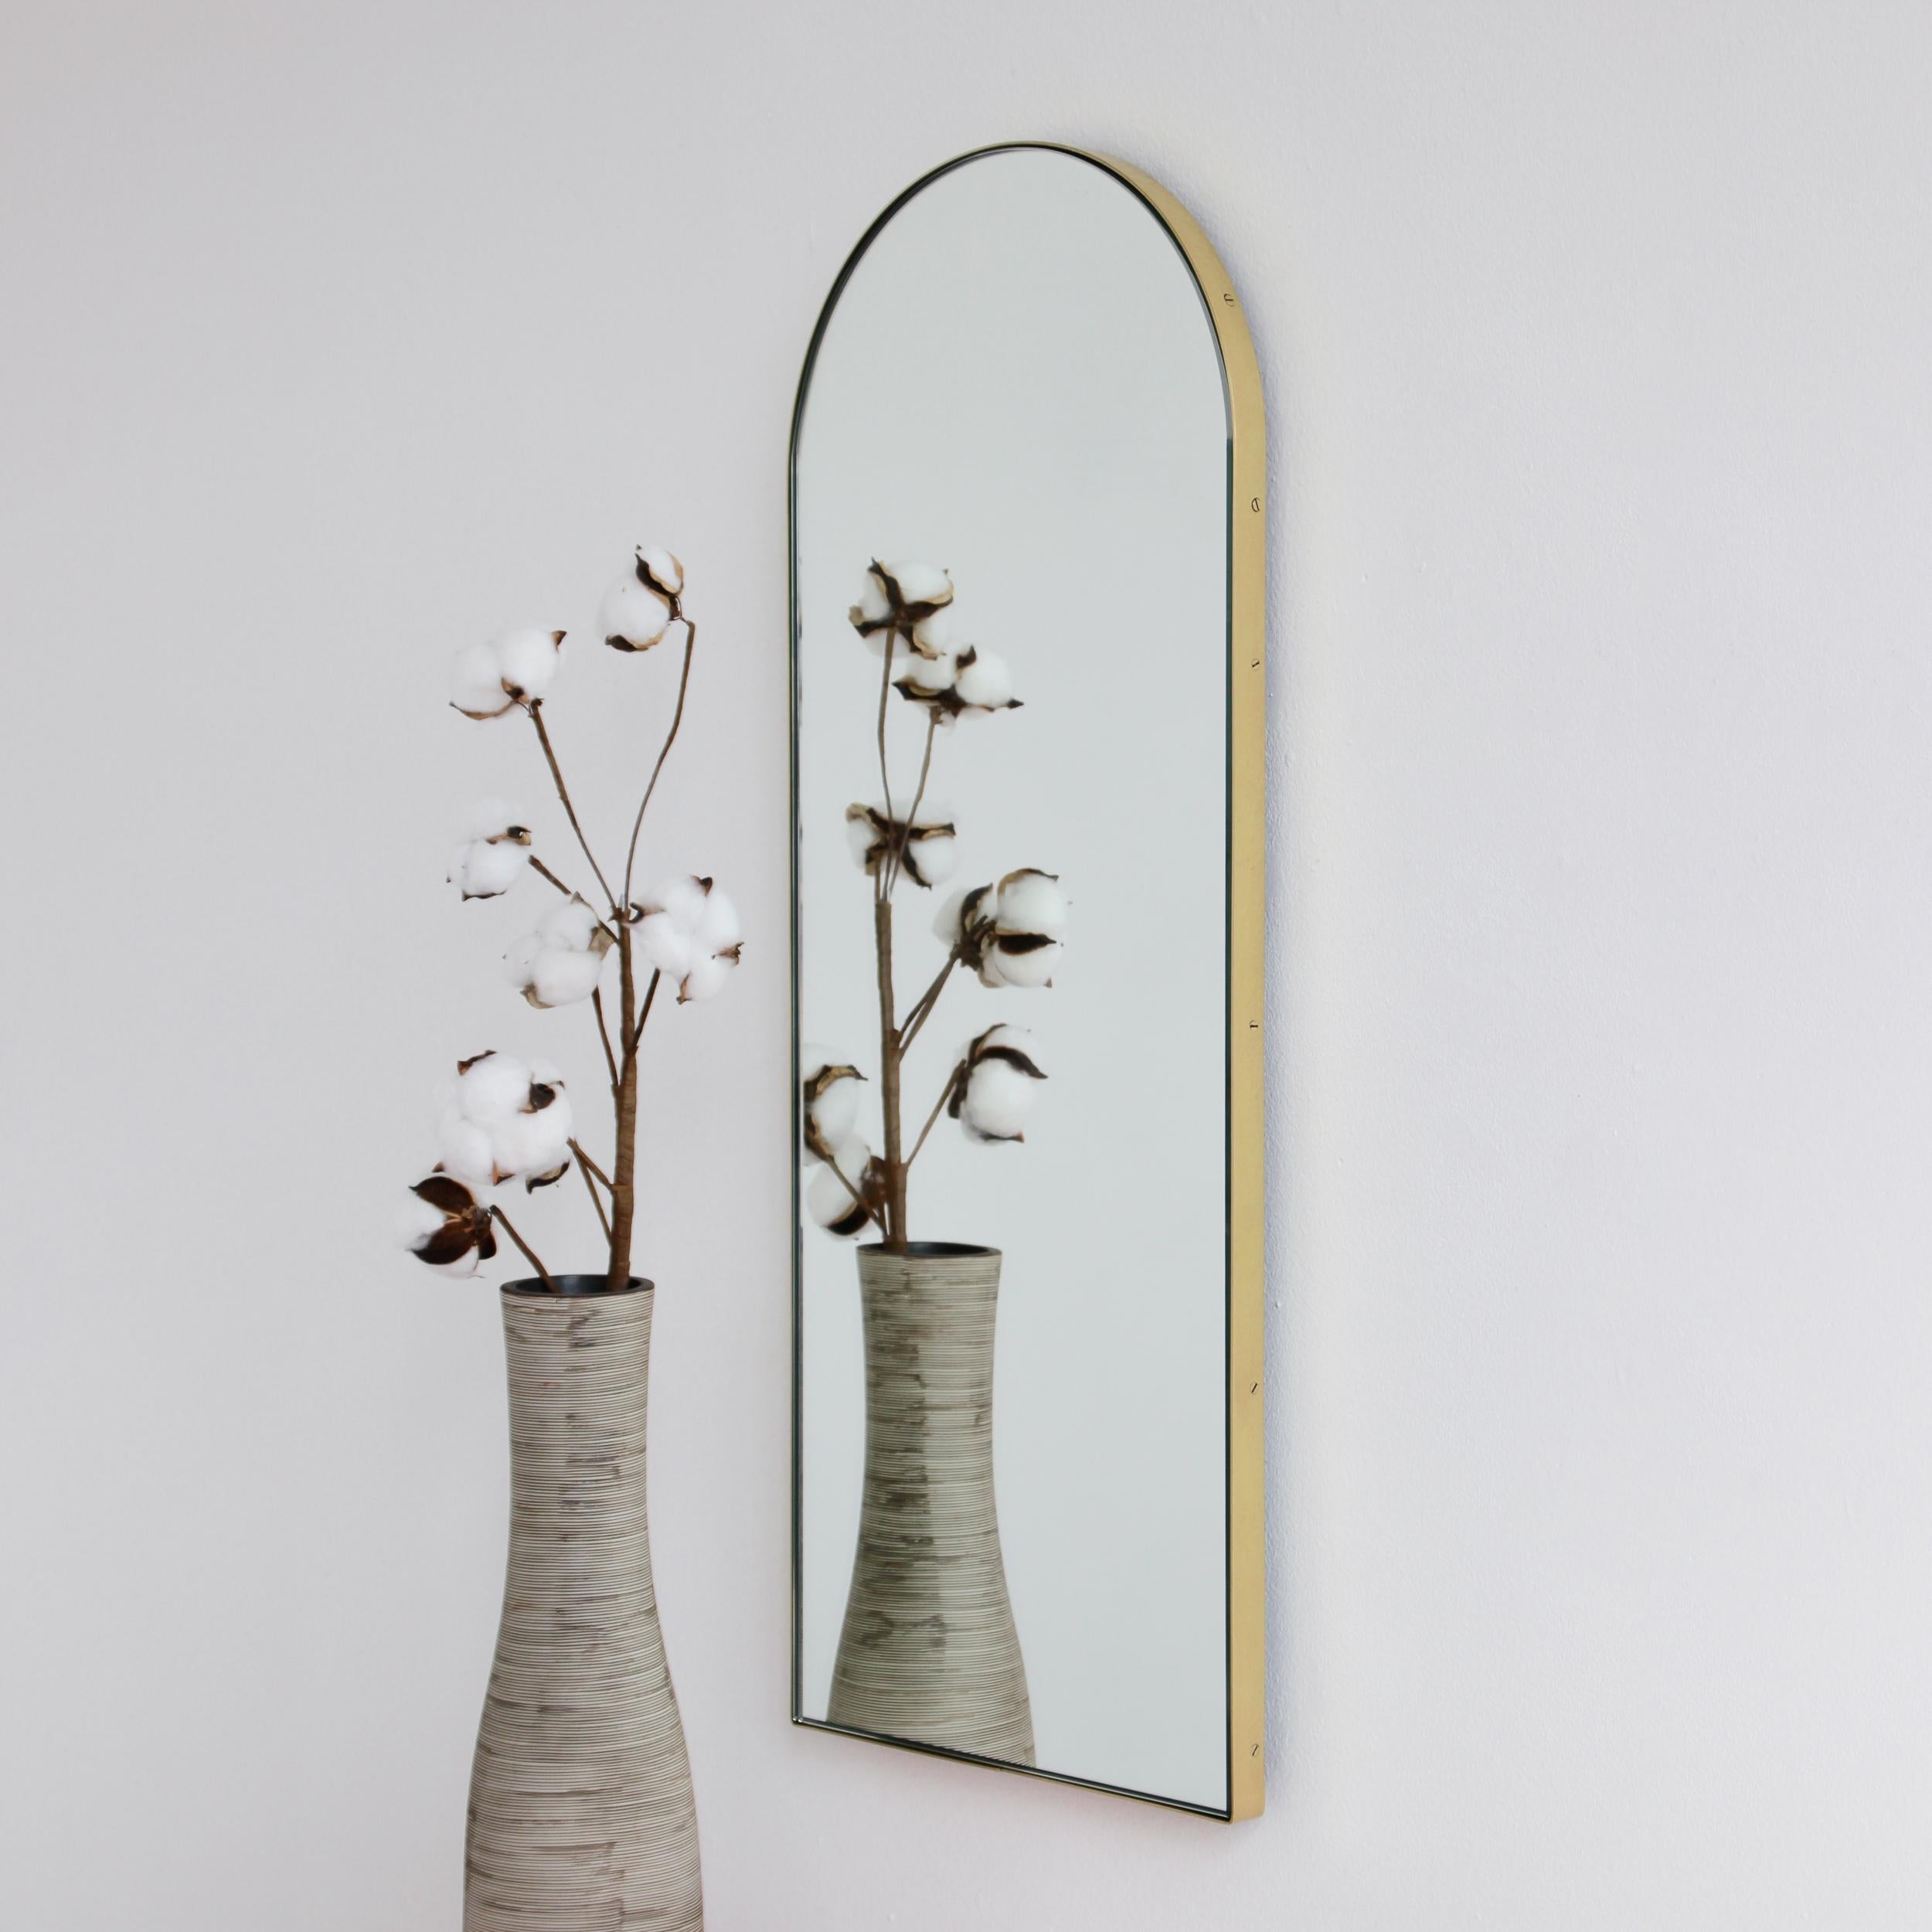 Ravissant miroir en forme d'arche avec un élégant cadre en laiton massif brossé. Conçu et fabriqué à la main à Londres, au Royaume-Uni.

Les miroirs de taille moyenne, grande et extra-large (37cm x 56cm, 46cm x 71cm et 48cm x 97cm) sont équipés d'un